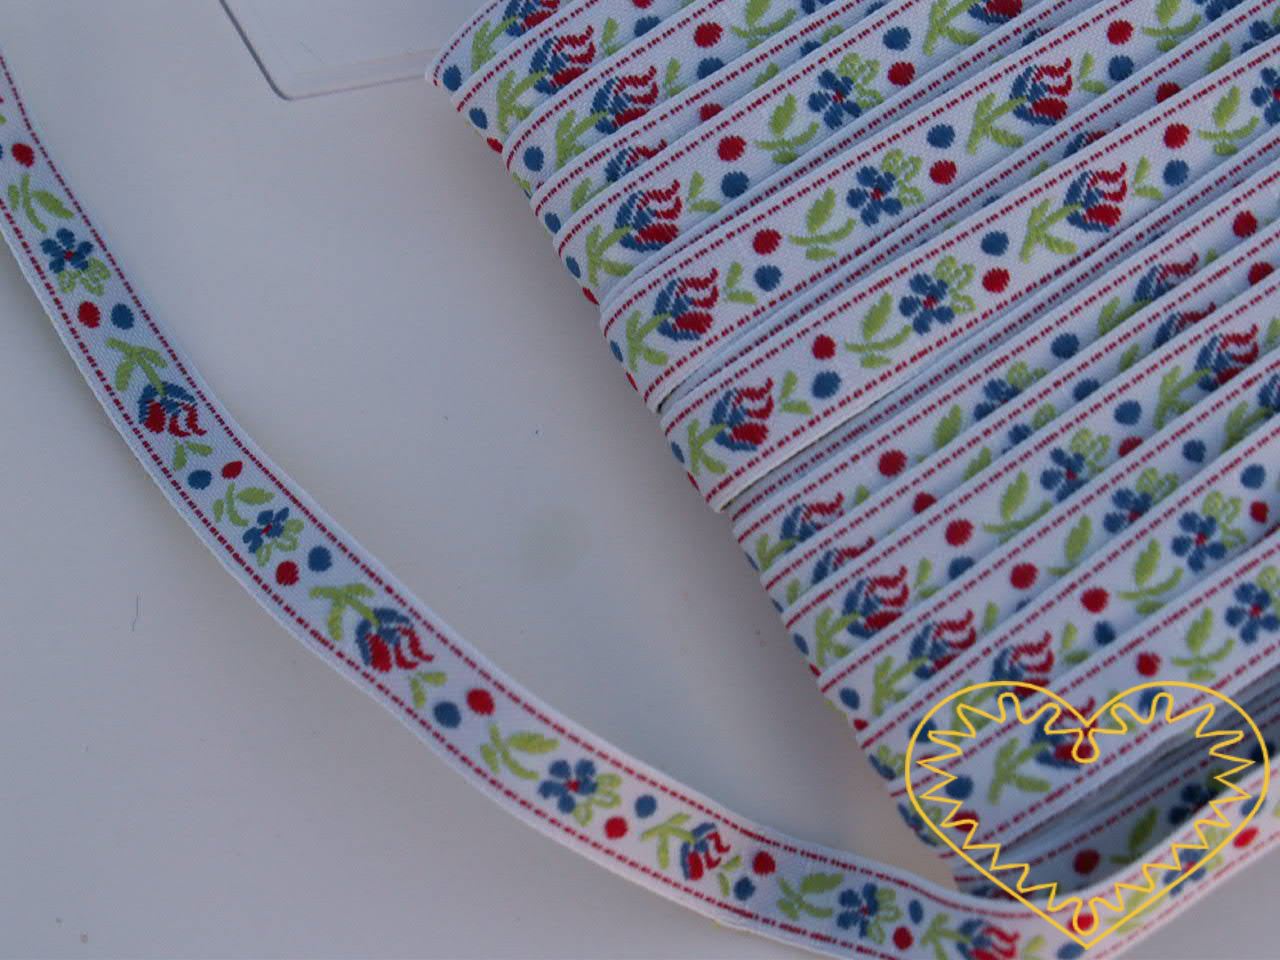 Úzká bílá krojová stuha se vzorem - vzorovka - šíře 1 cm. Textilní tkaná stuha s jemným vzorkem je vhodná zvláště při výrobě krojů a předmětů tradiční lidové kultury. Vhodná též k lemování tkanin a šatů panenek a maňásků.